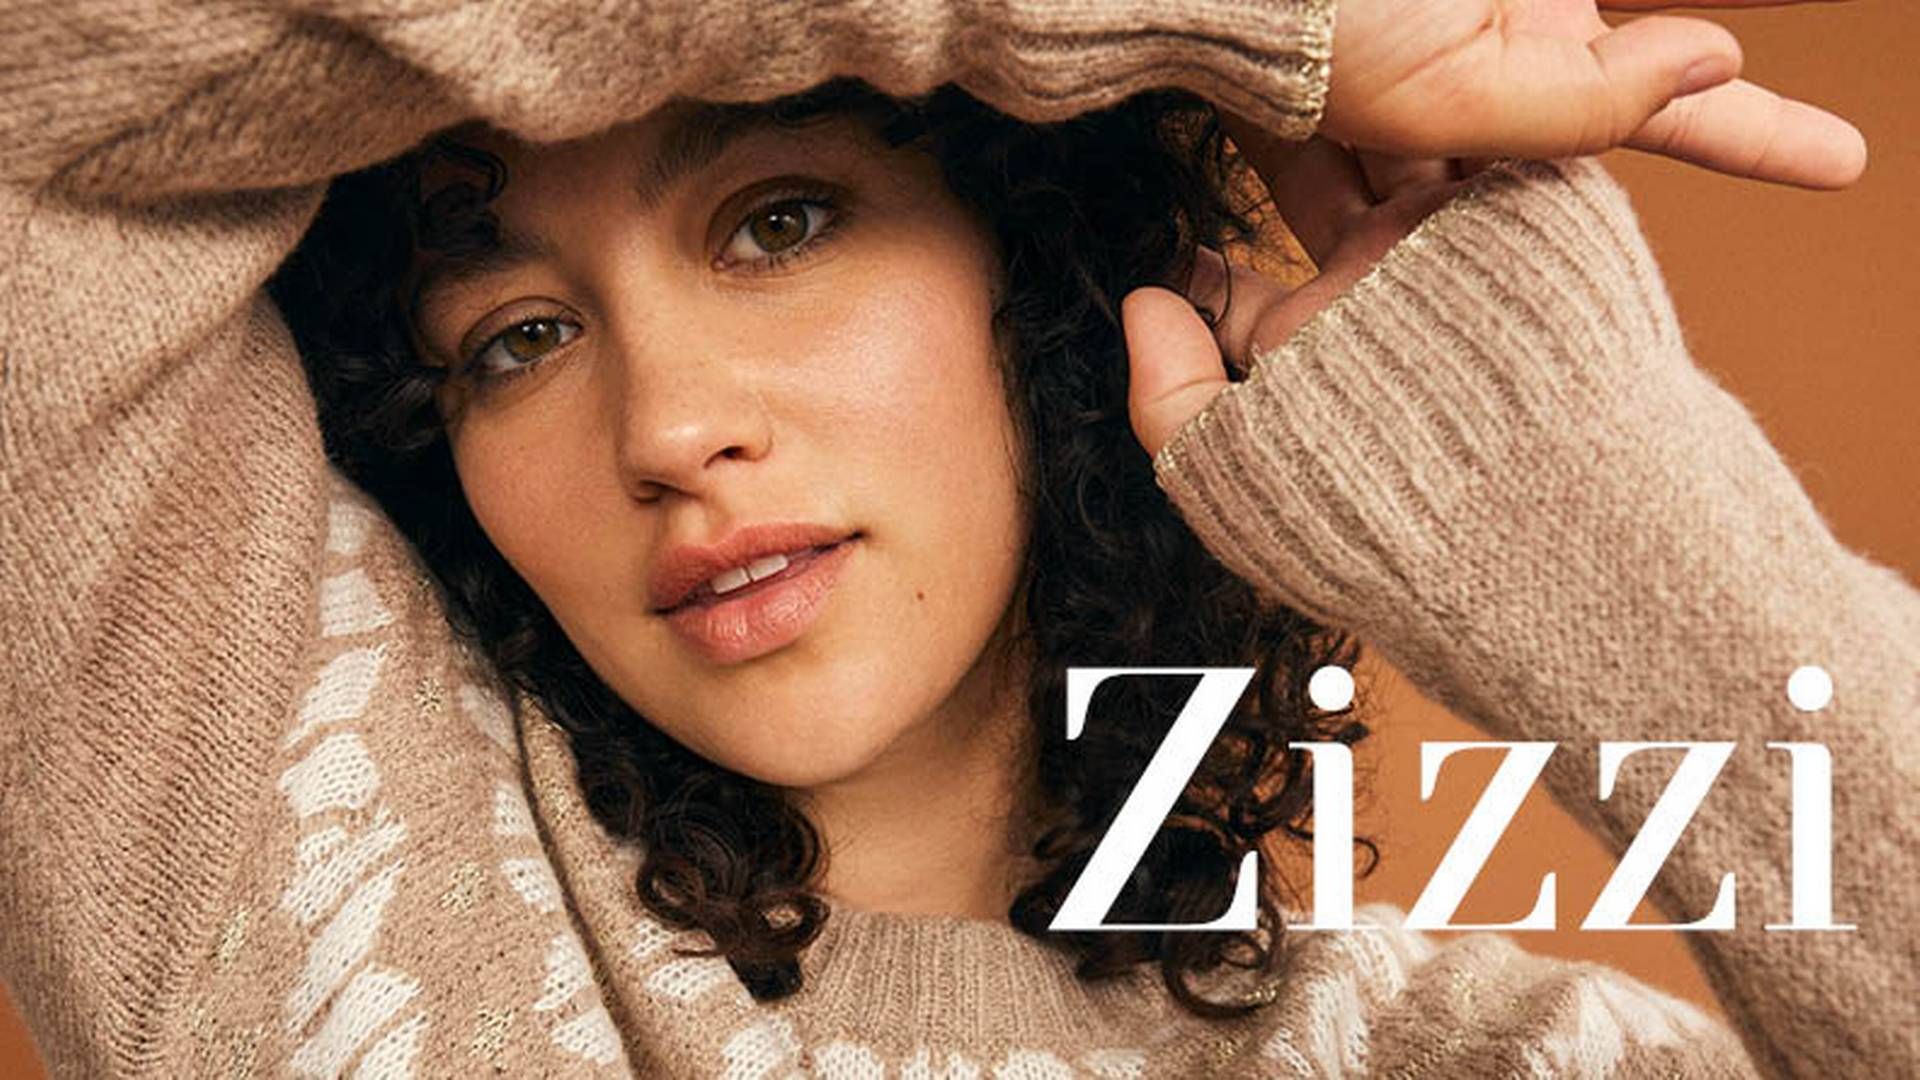 Brandet Zizzi, der laver mode til plus size-kvinder, blev grundlagt i 2000. | Foto: Zizzi/pr